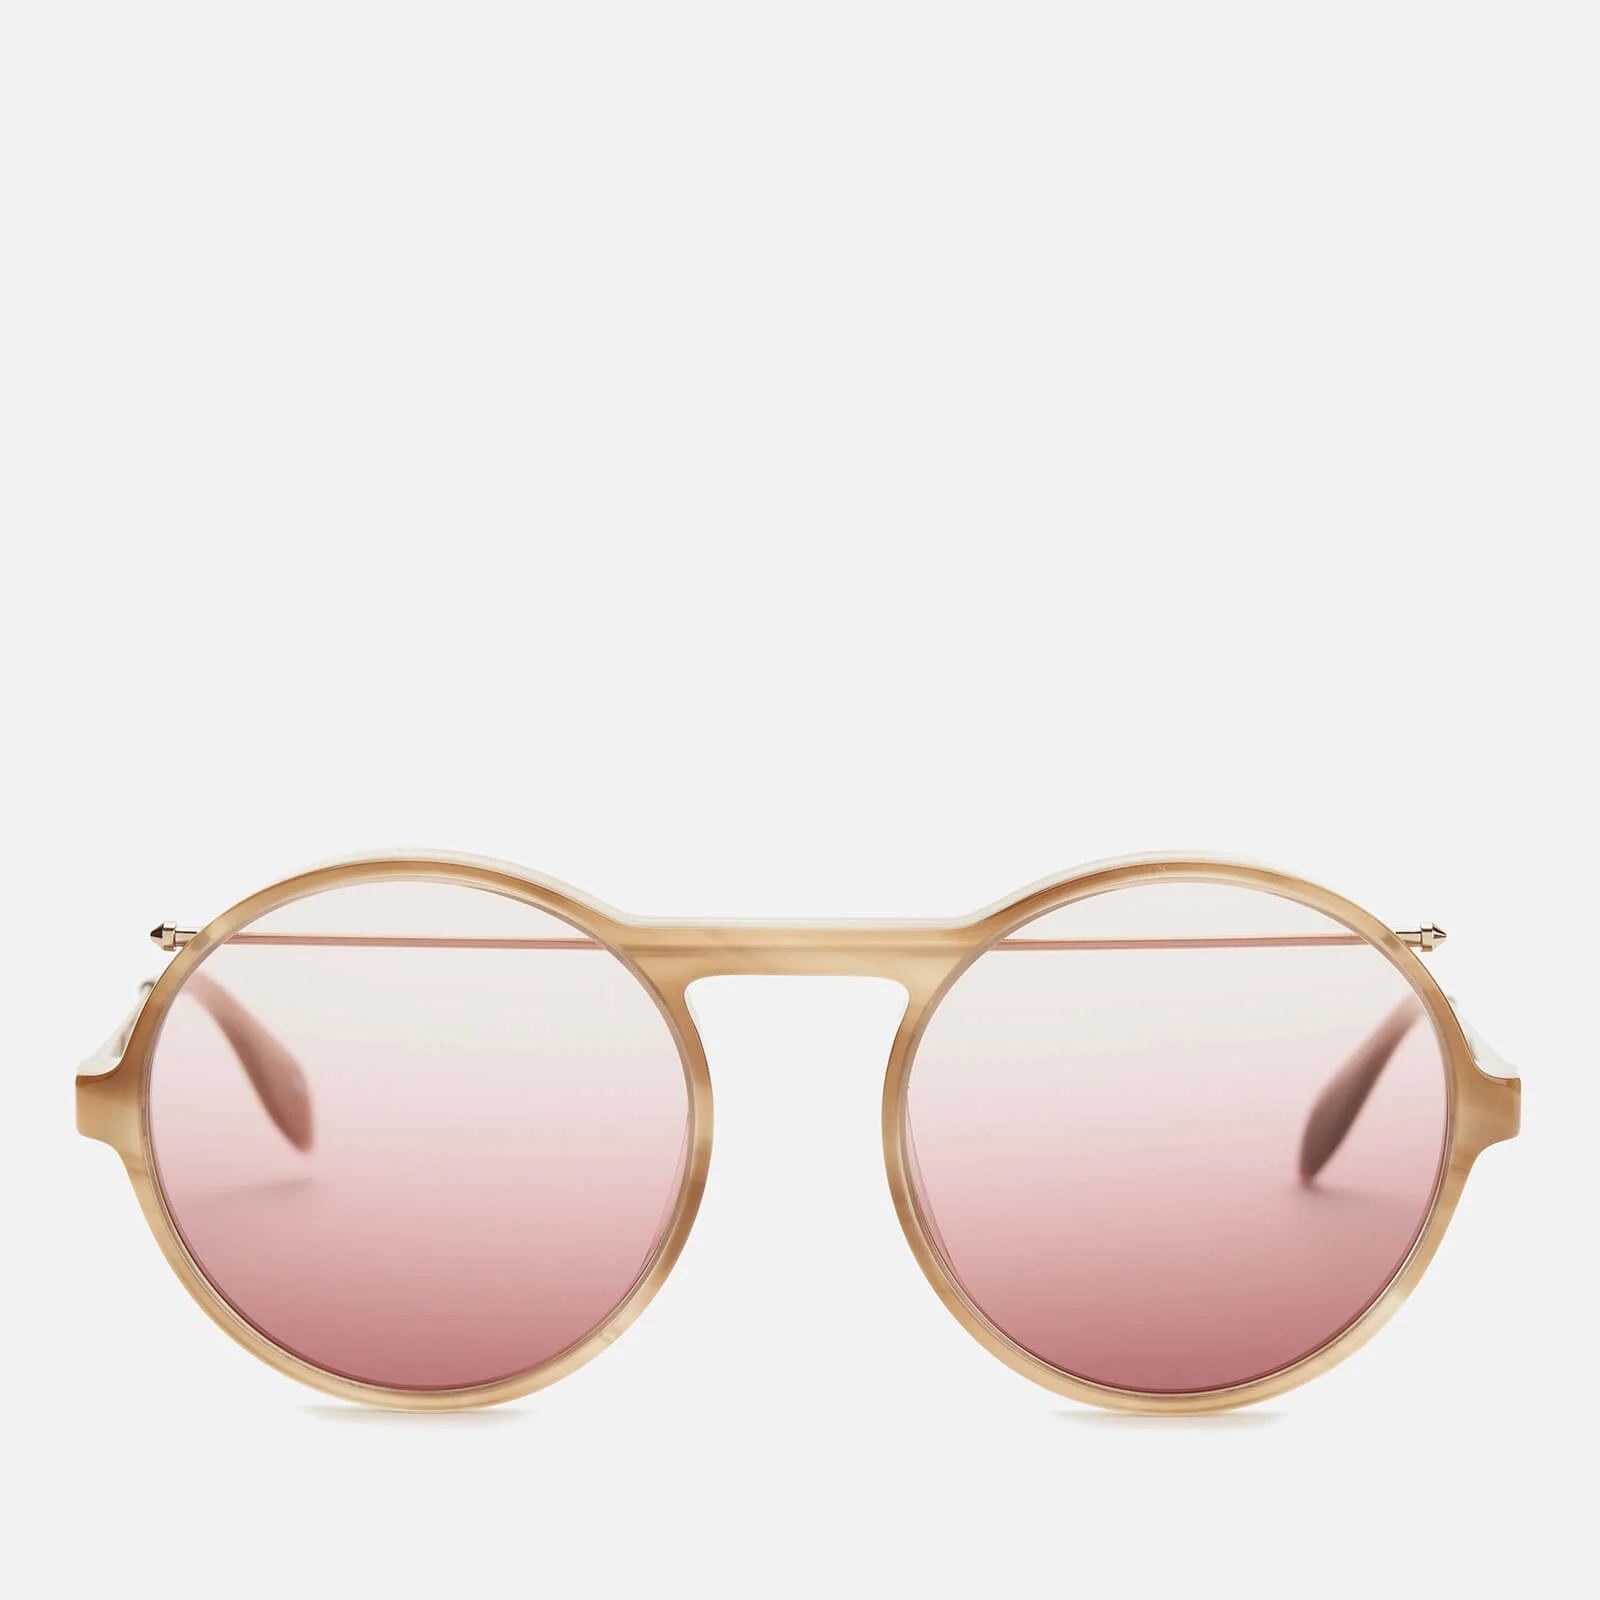 Alexander McQueen Men's Metal Round Frame Sunglasses - Havana/Gold Image 1